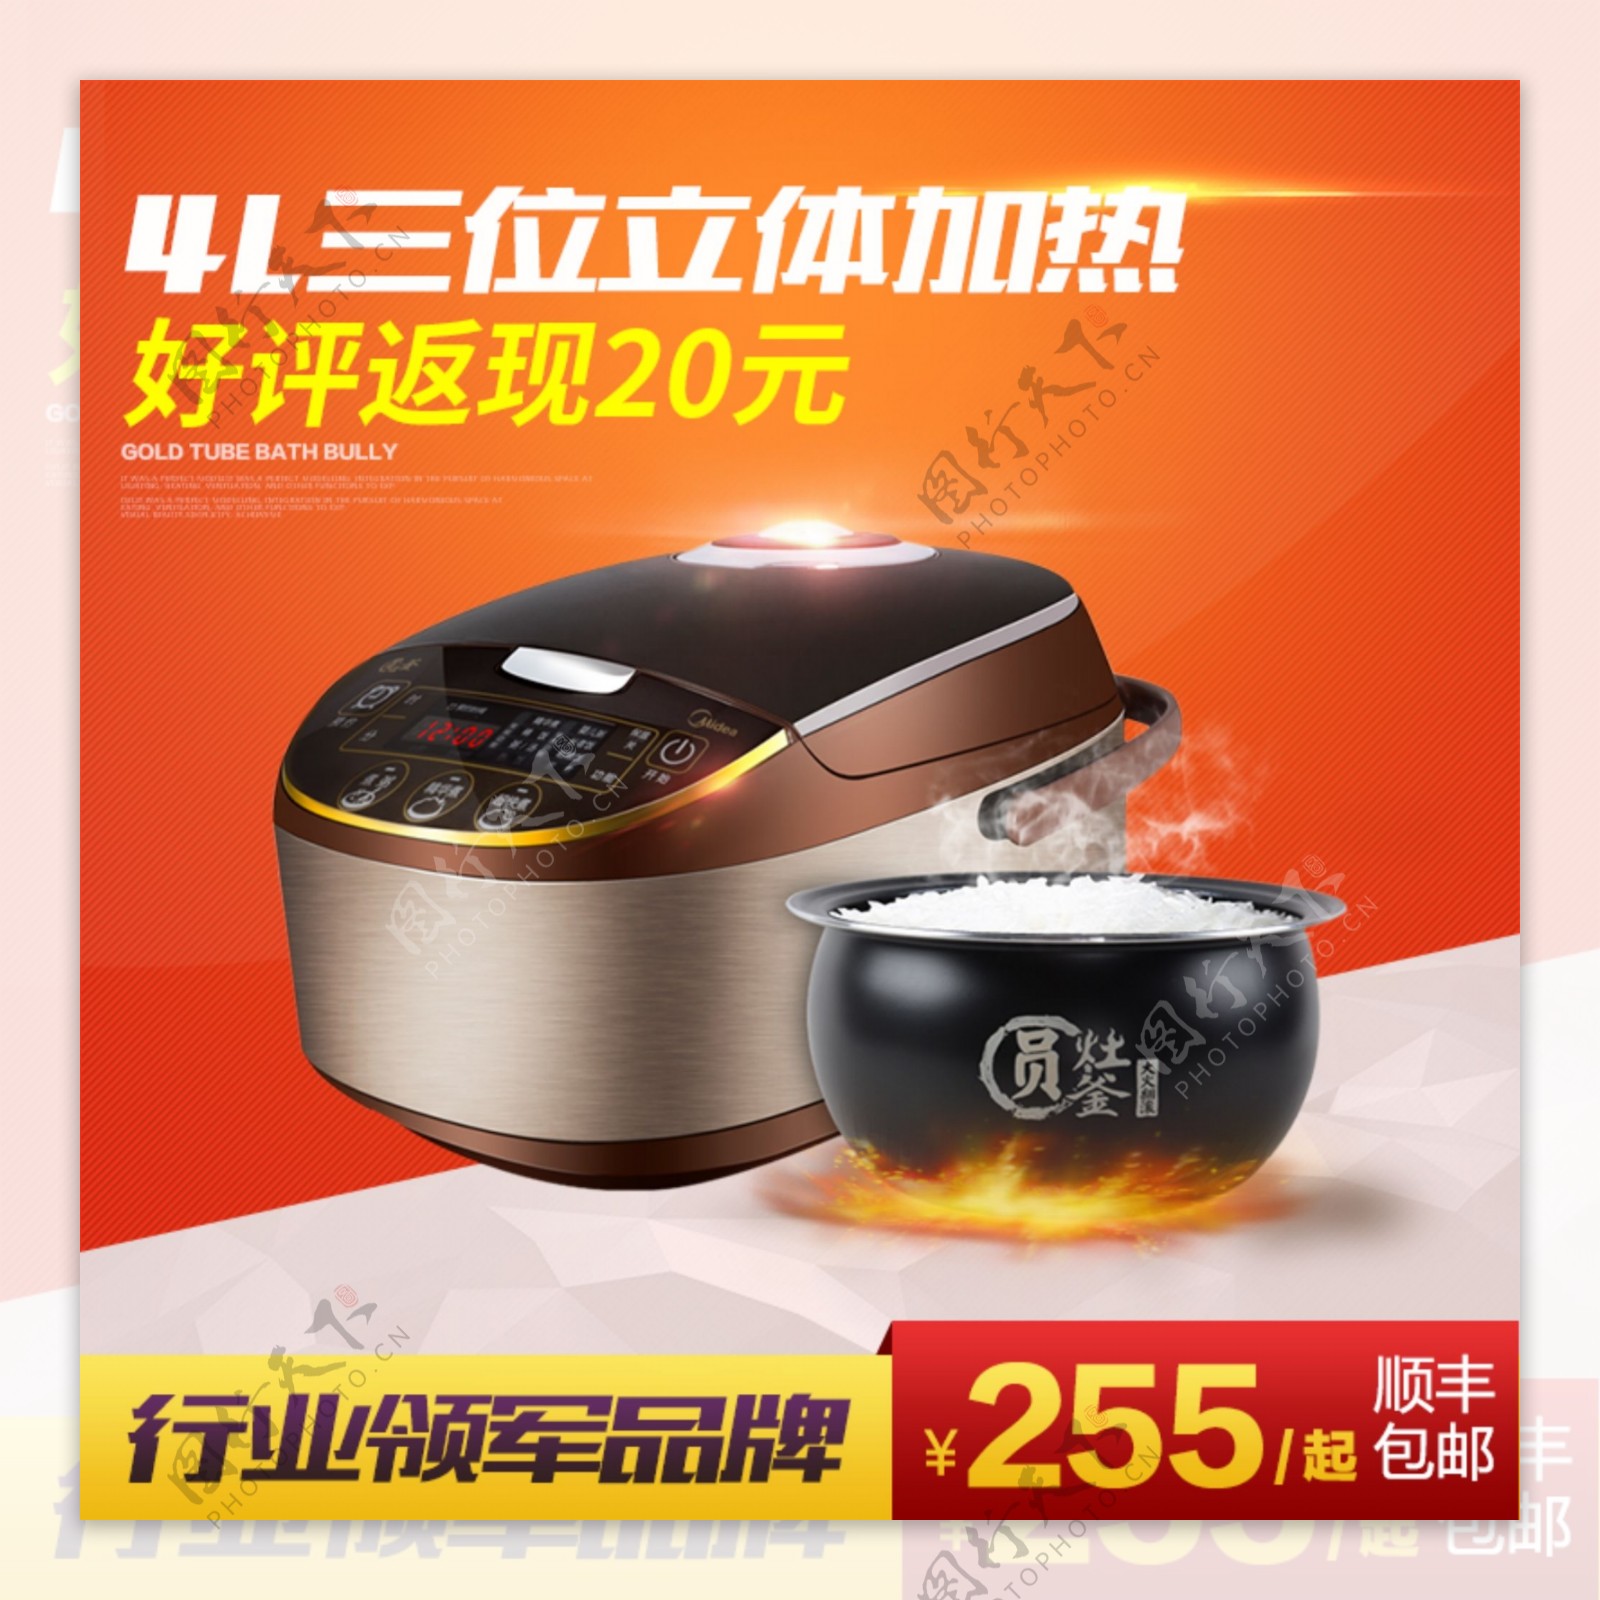 天猫淘宝节日促销新品直通车钻展电器电饭煲